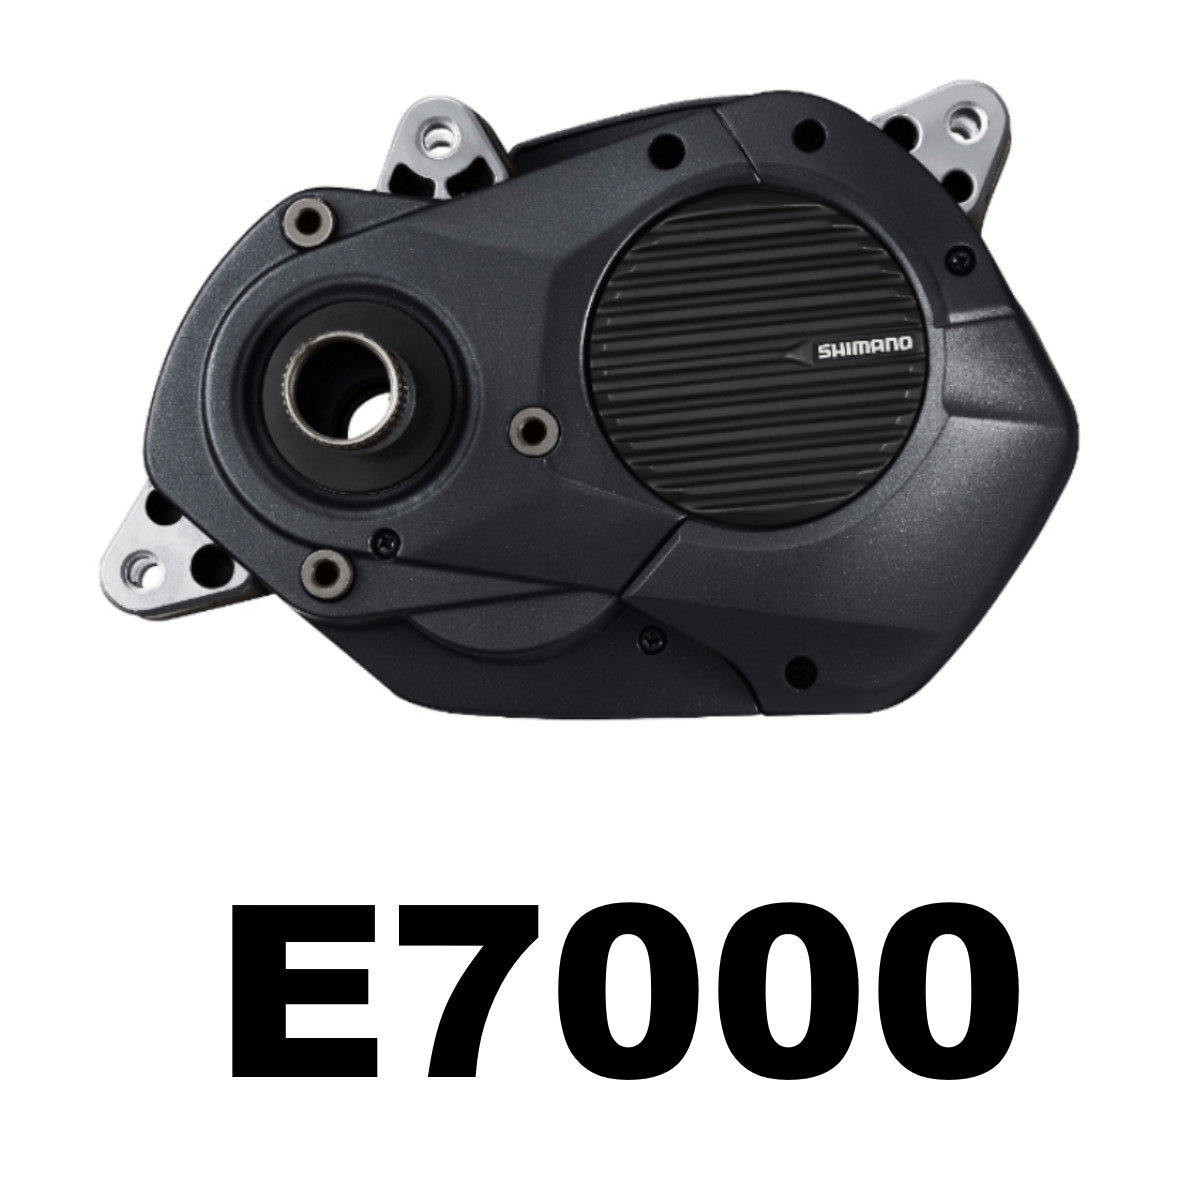 Shimano E-System E7000